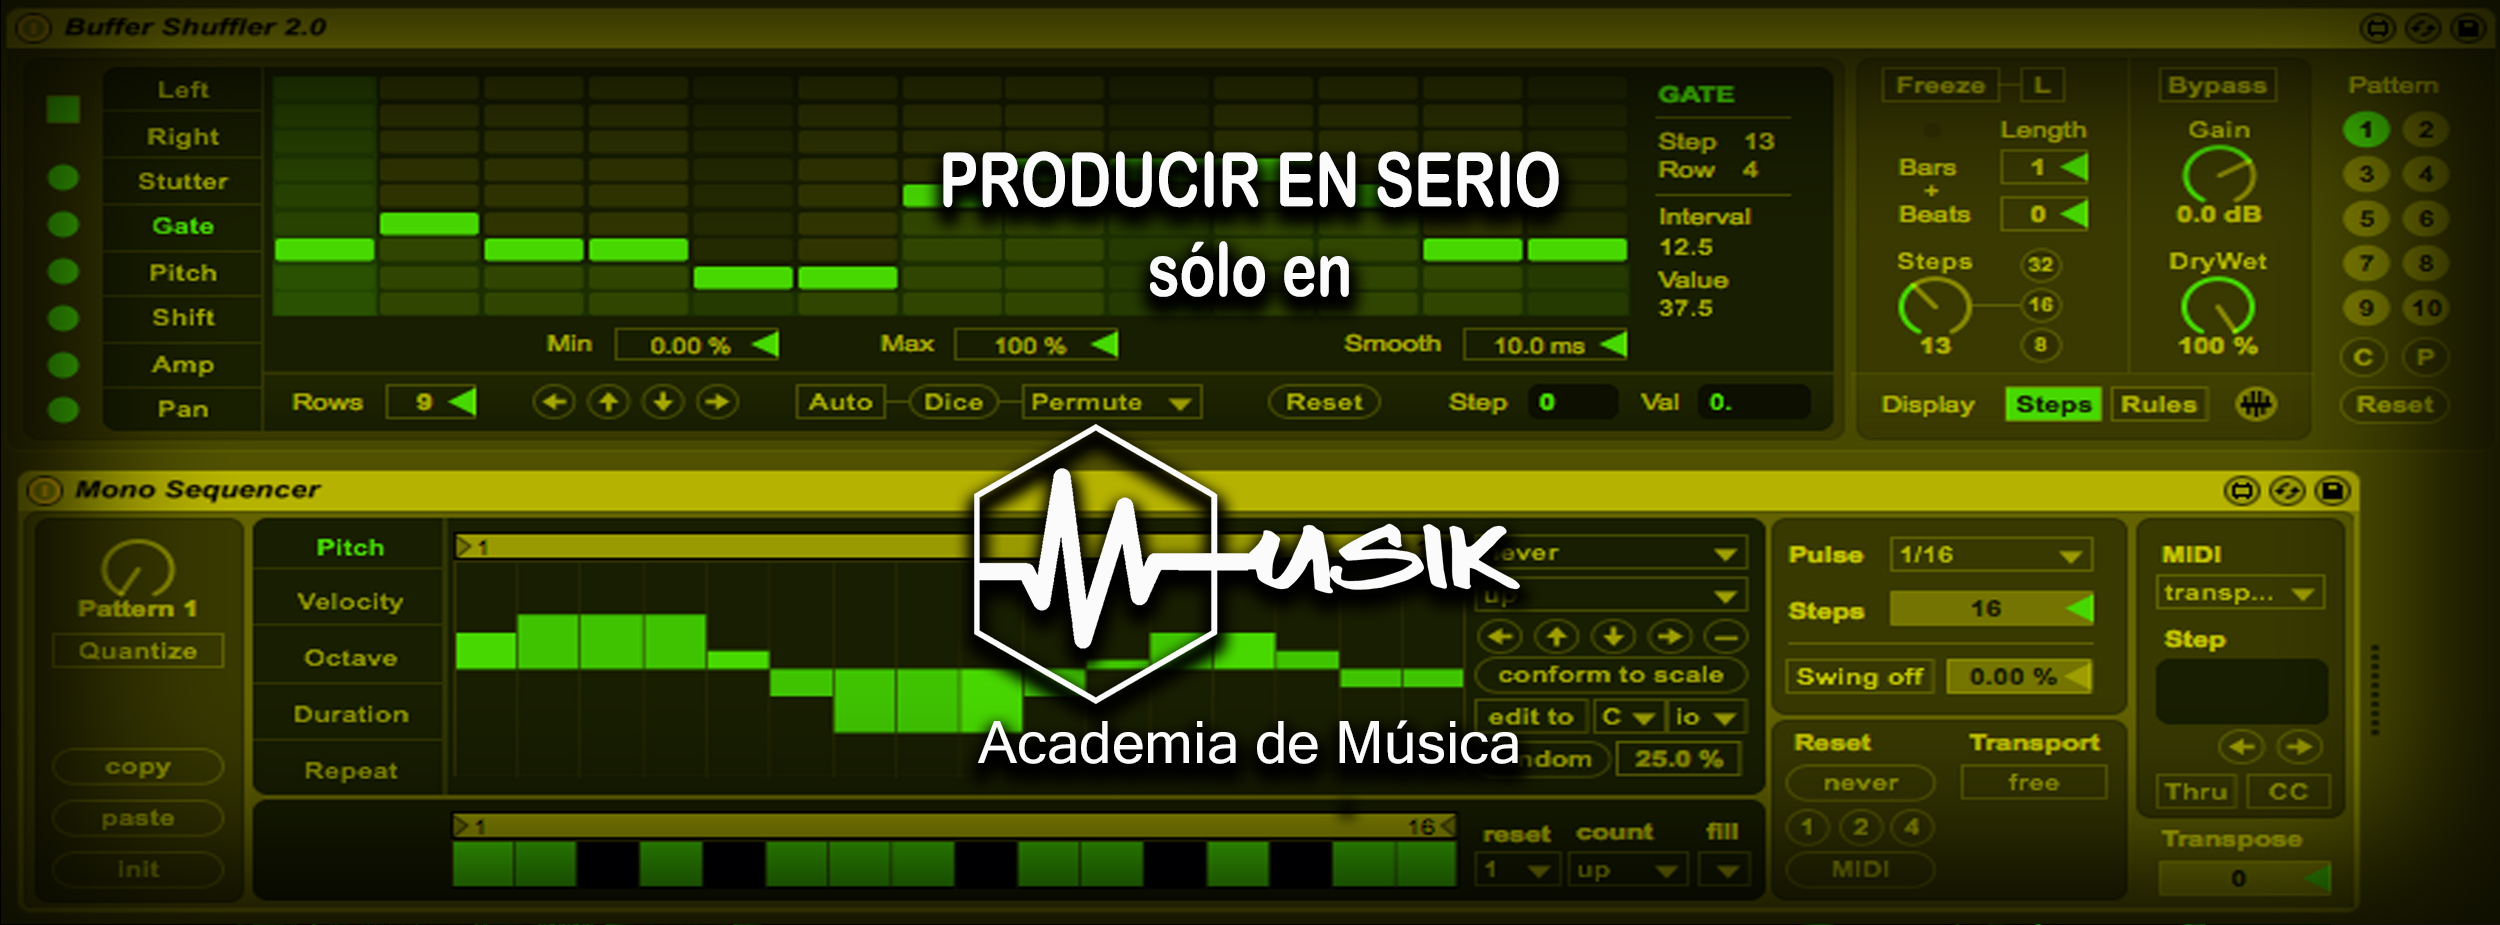 Musik 009 - Producir En Serio